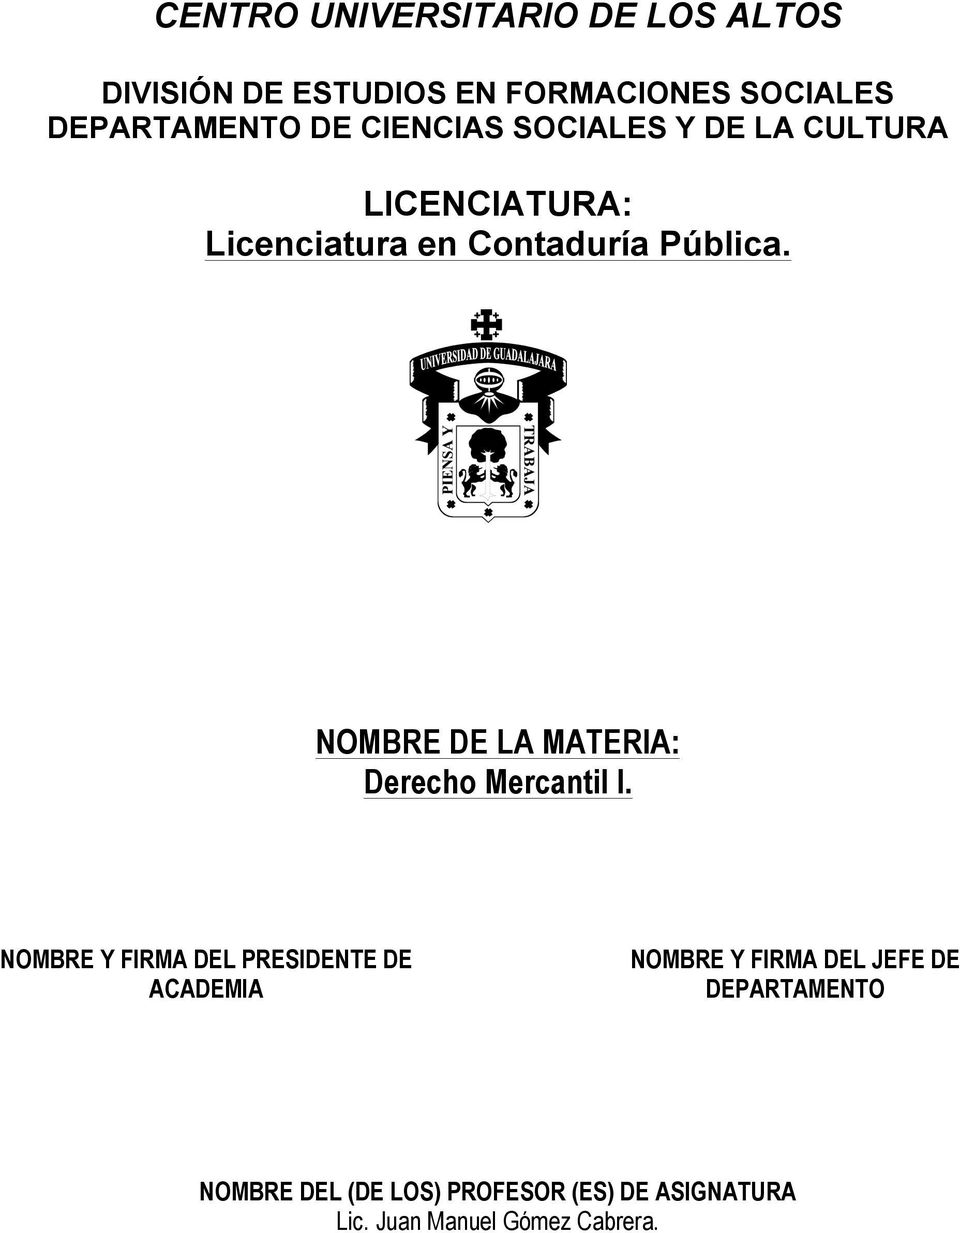 NOMBRE DE LA MATERIA: Derecho Mercantil I.